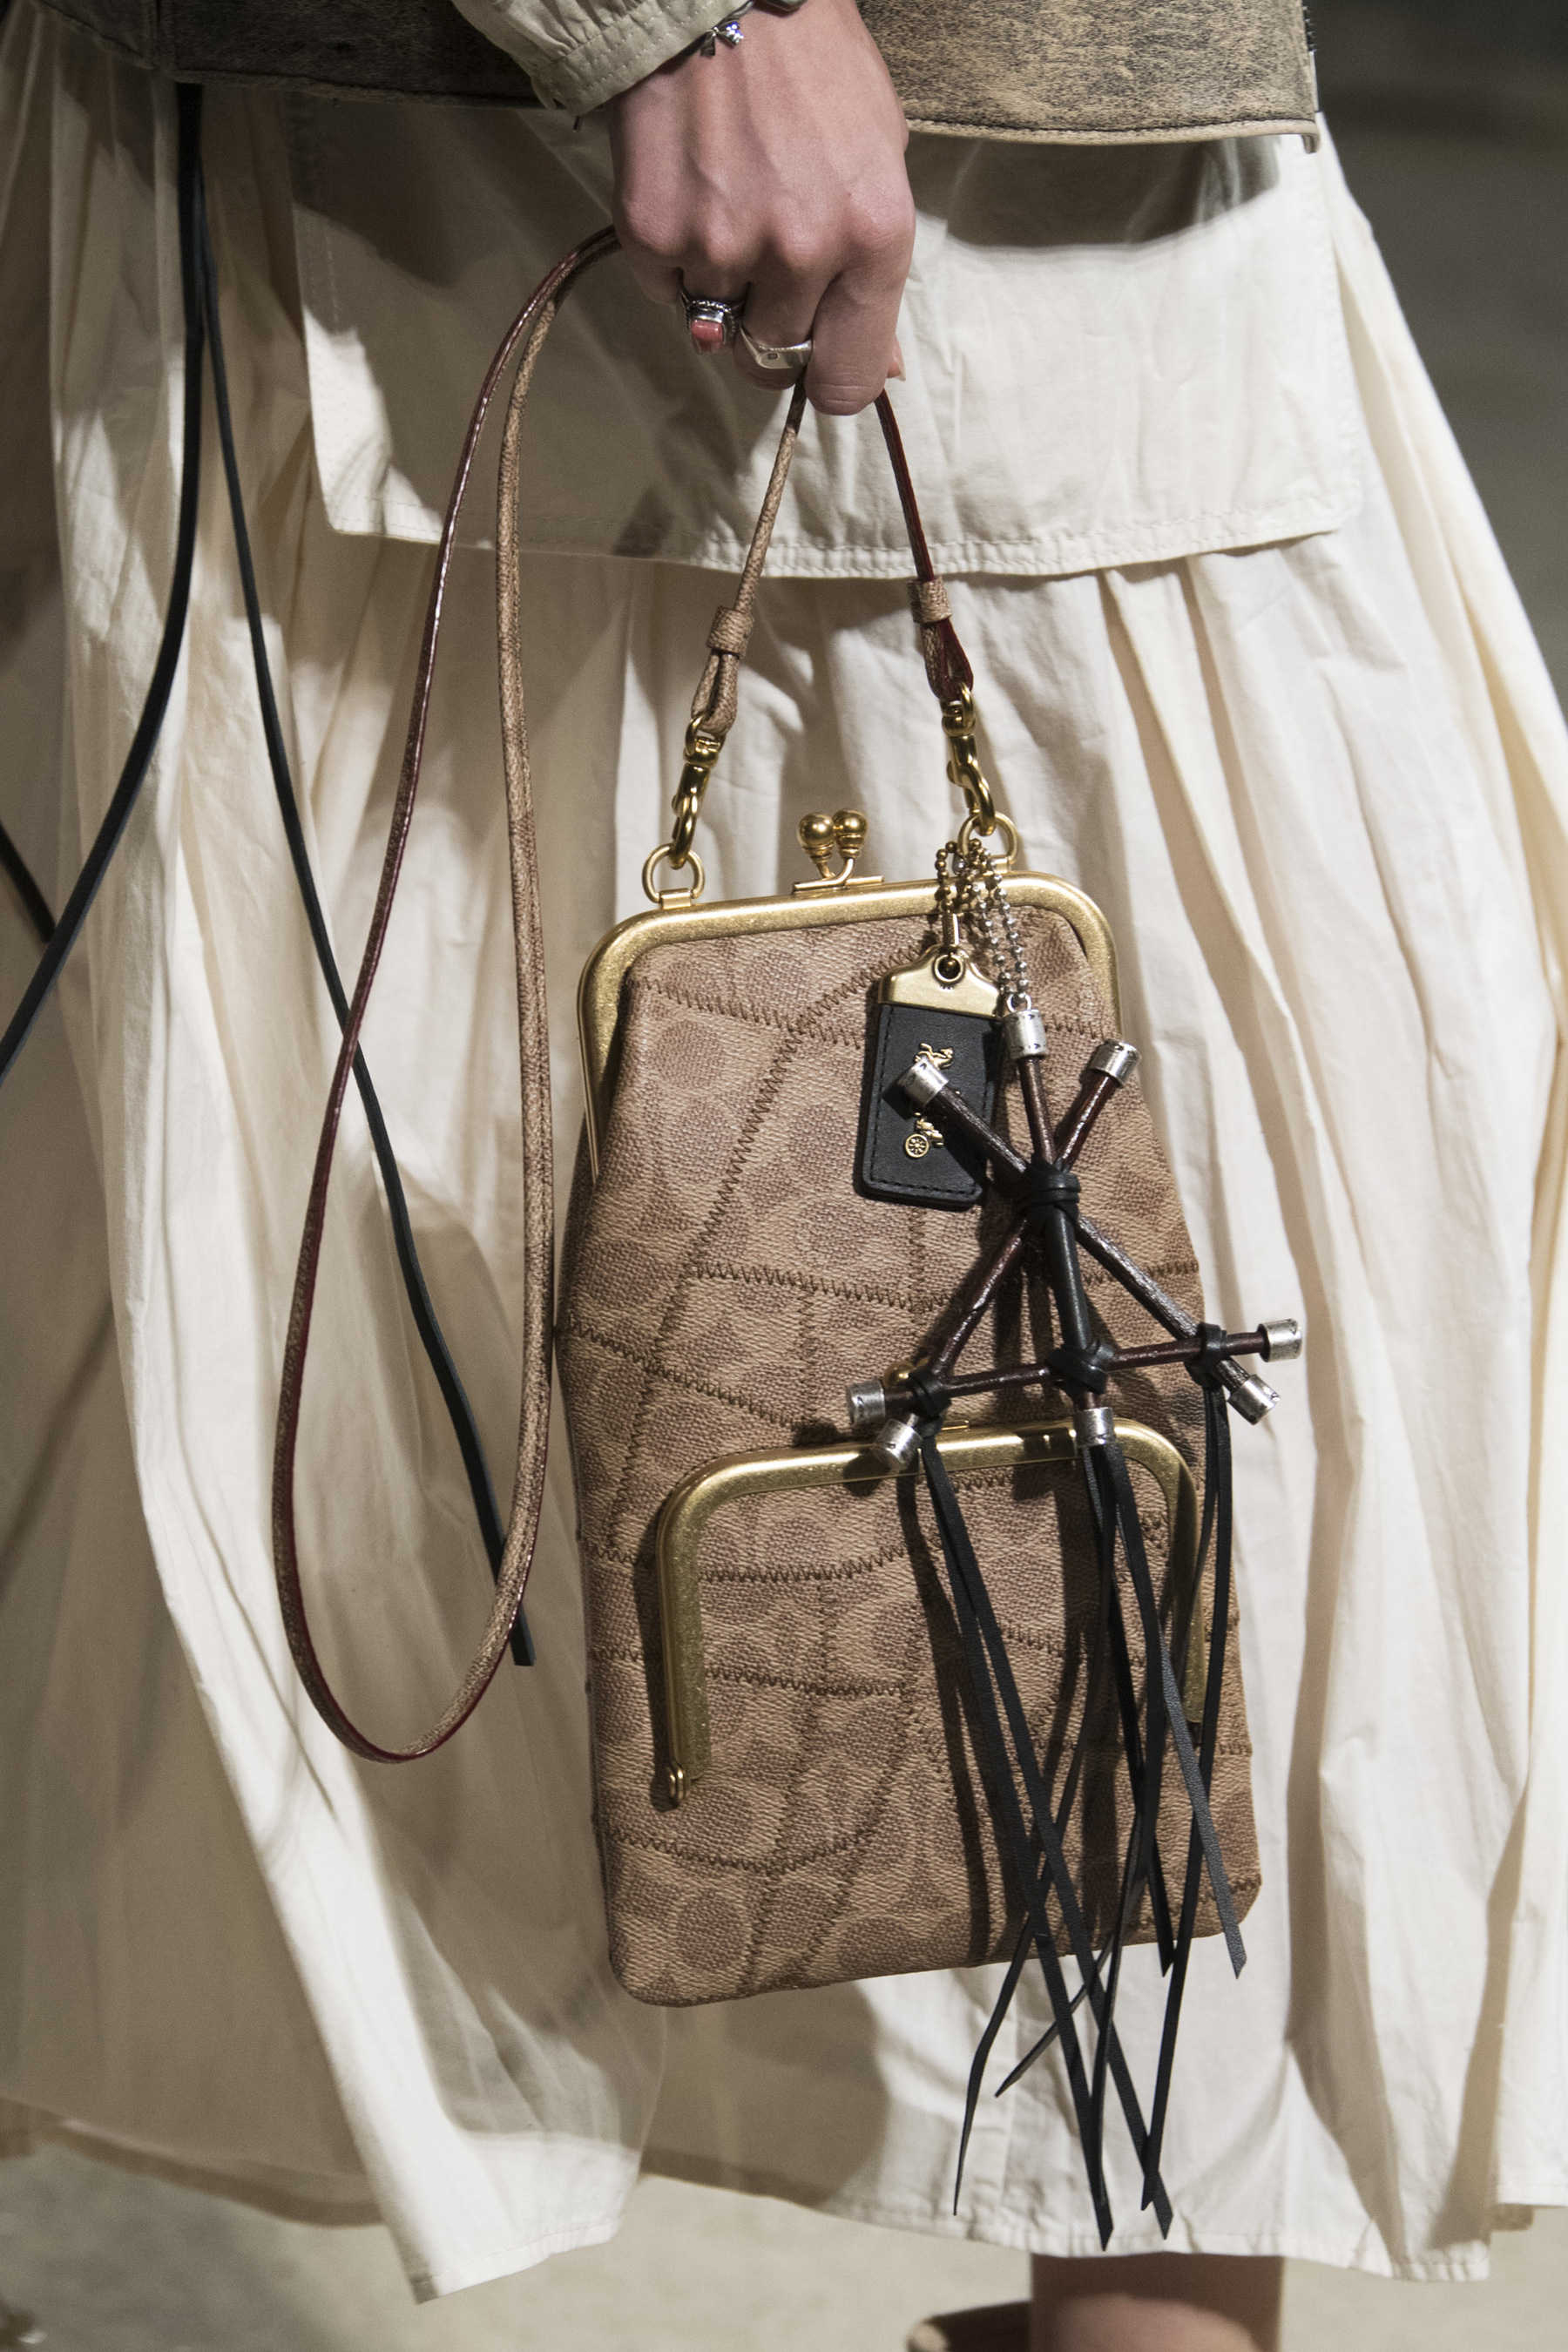 Chanel Spring 2022 Handbags | semashow.com